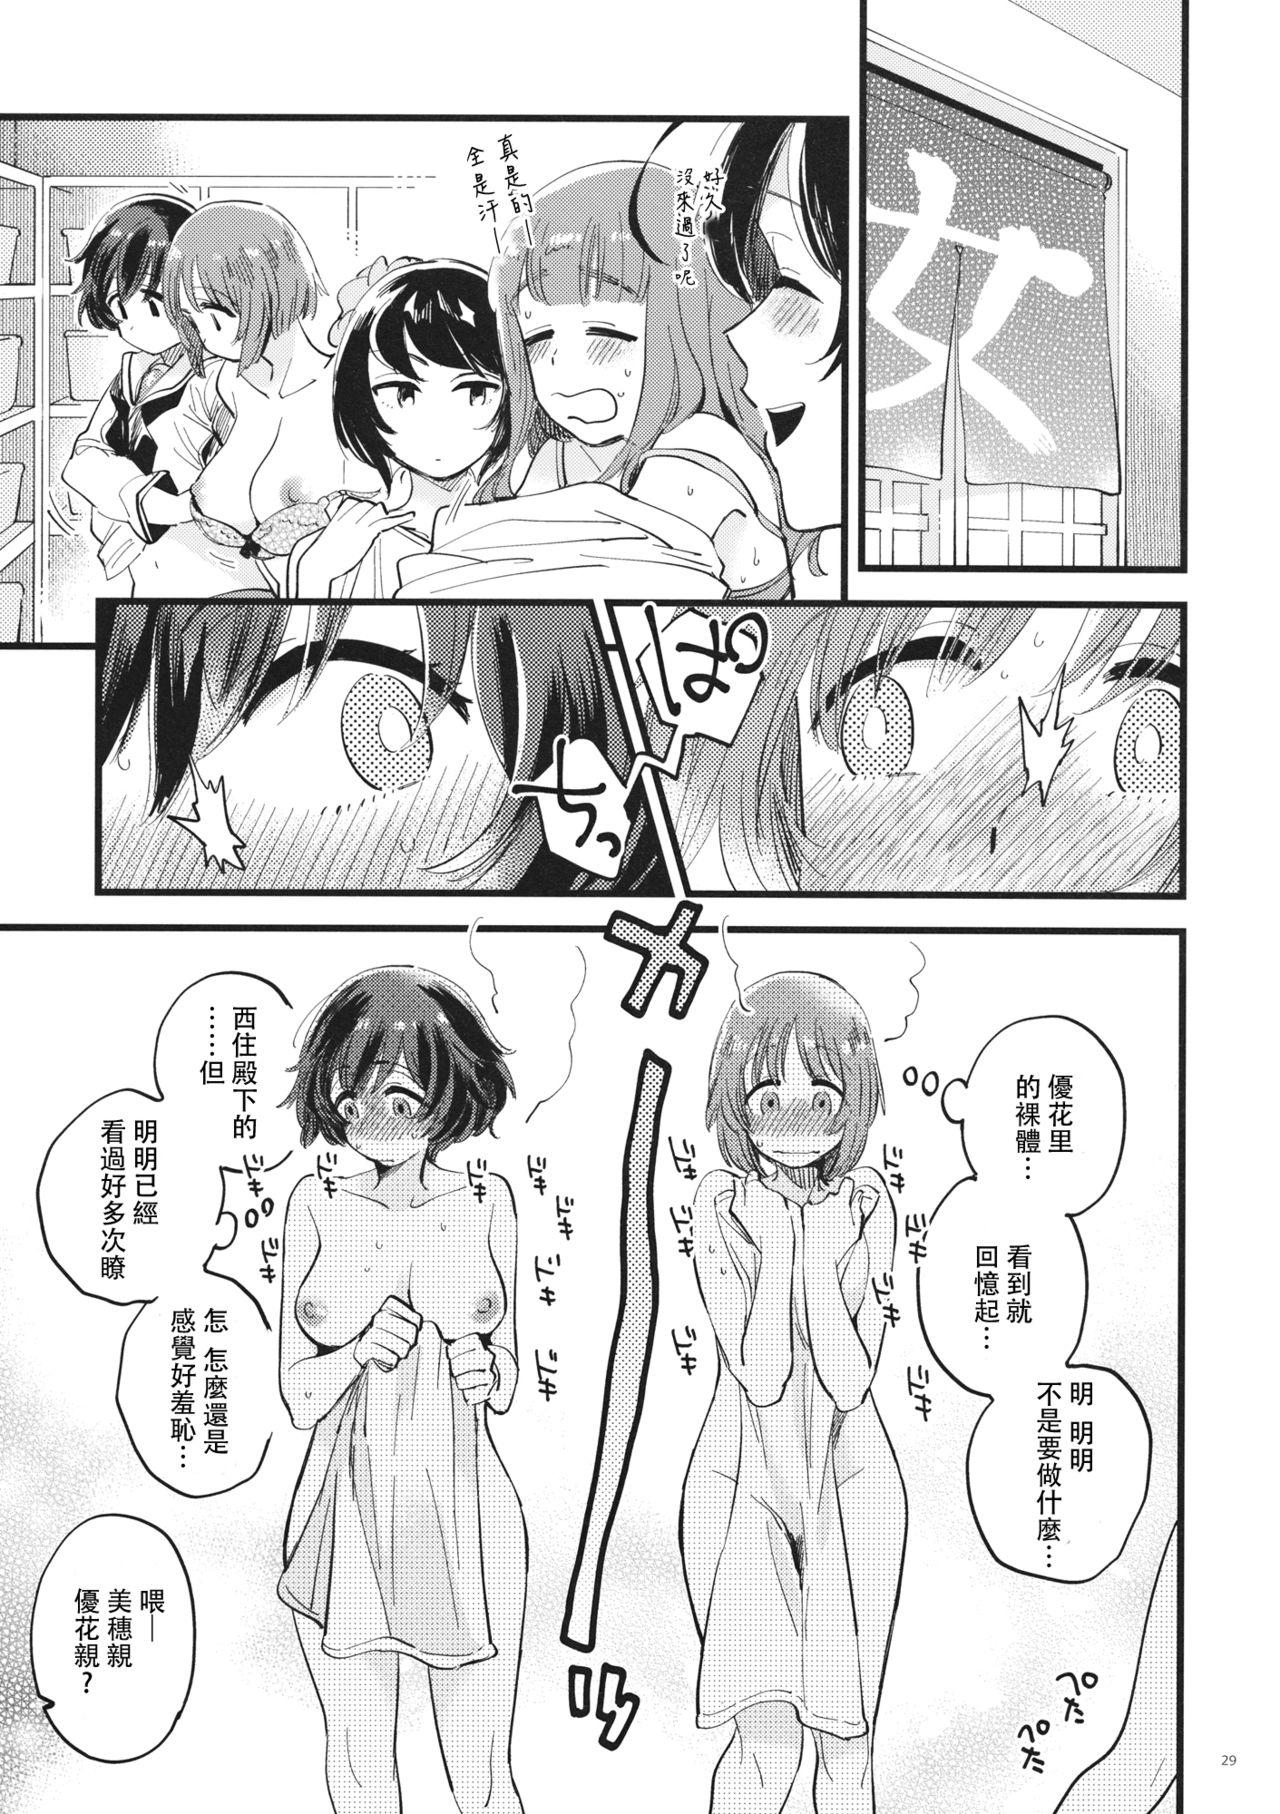 Ball Sucking Yasashiku, Sawatte, Oku made Furete. - Girls und panzer Blowjob Porn - Page 29